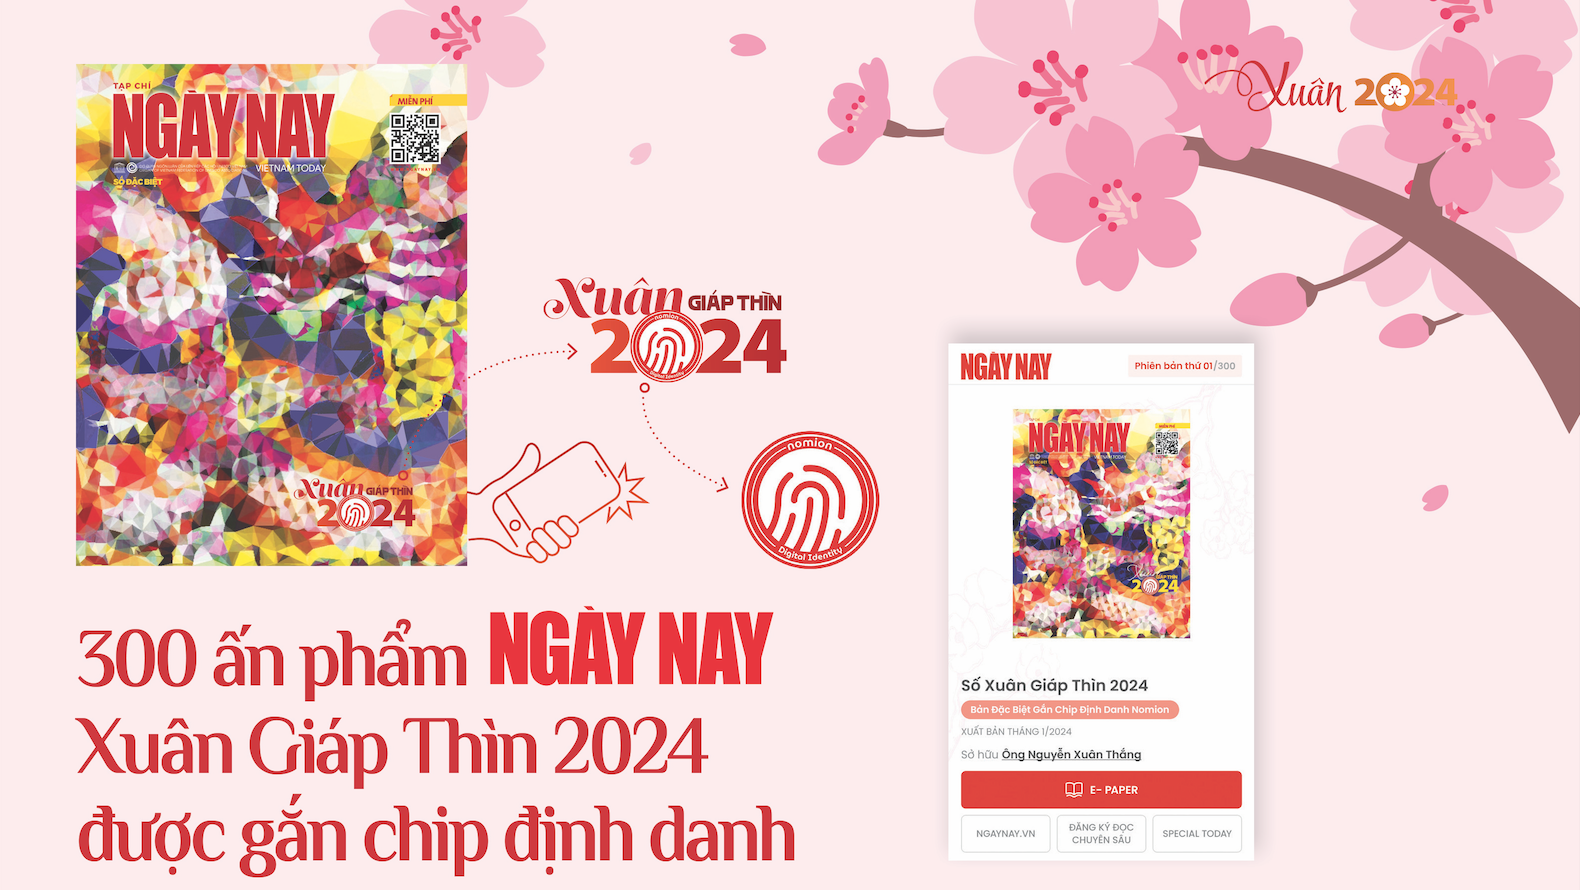 300 ấn phẩm Ngày Nay Xuân Giáp Thìn 2024 được gắn chip định danh 